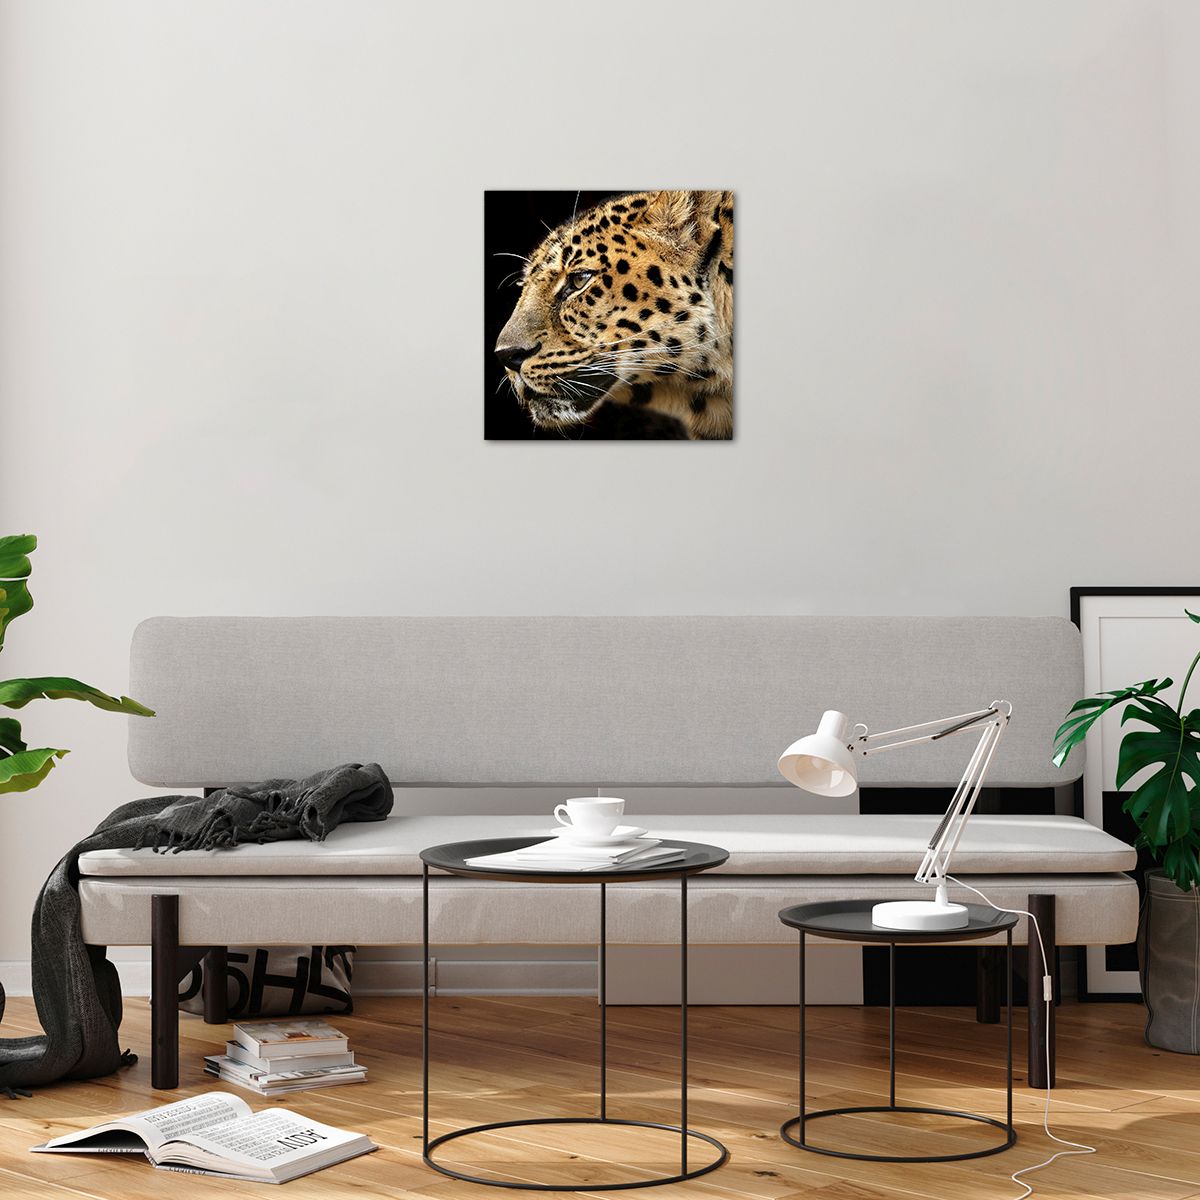 Bilder auf glas Tiere, Bilder auf glas Leopard, Bilder auf glas Afrika, Bilder auf glas Wilde Katze, Bilder auf glas Natur